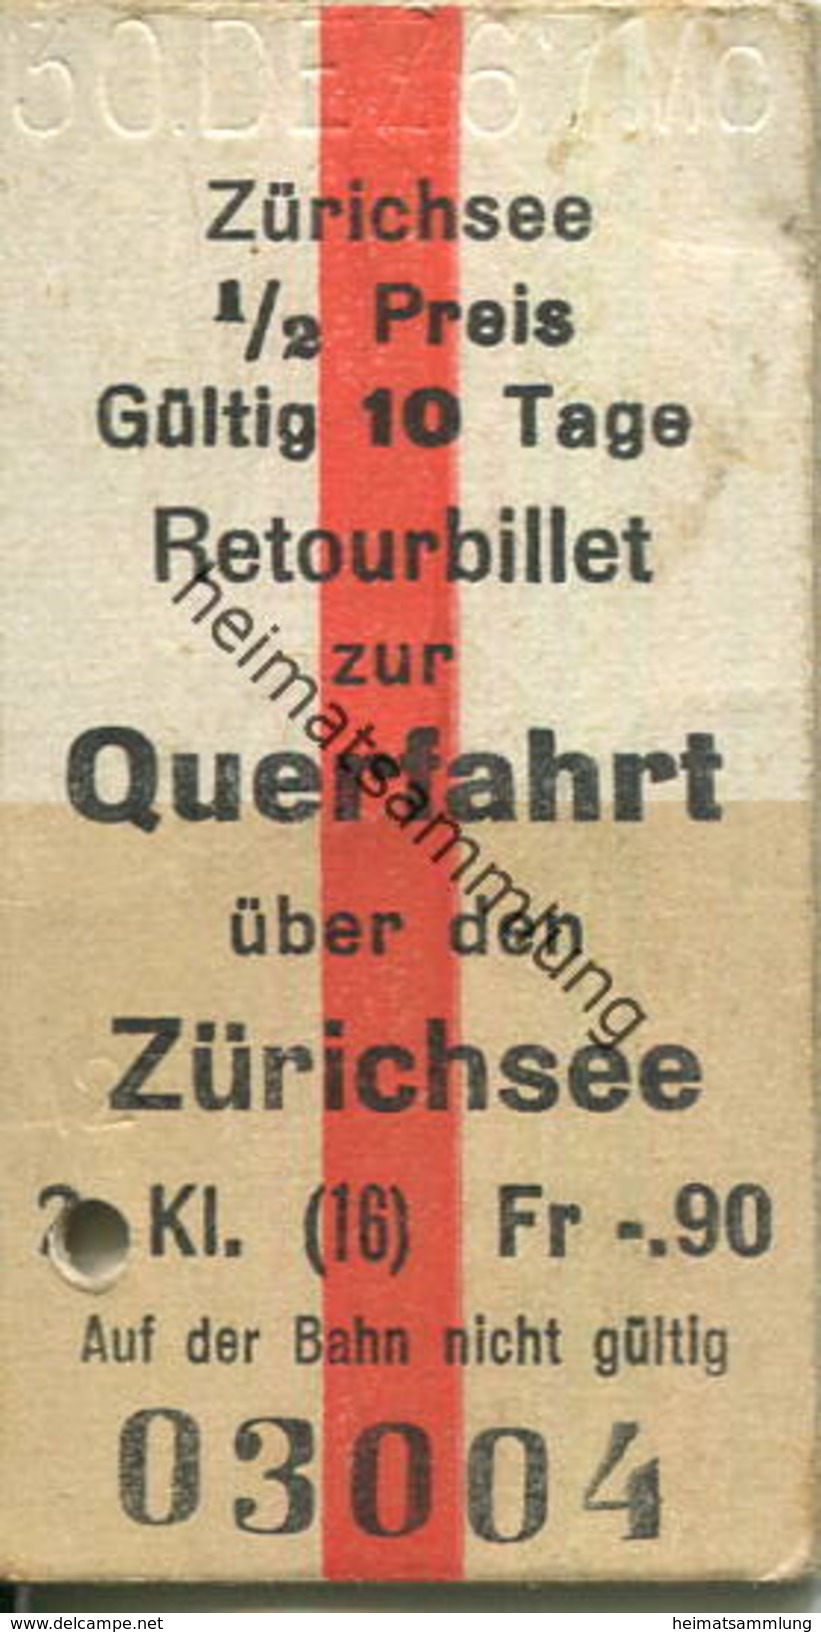 Schweiz - Zürichsee Retourbillet Zur Querfahrt über Den Zürichsee - Fahrkarte 1967 - Europa